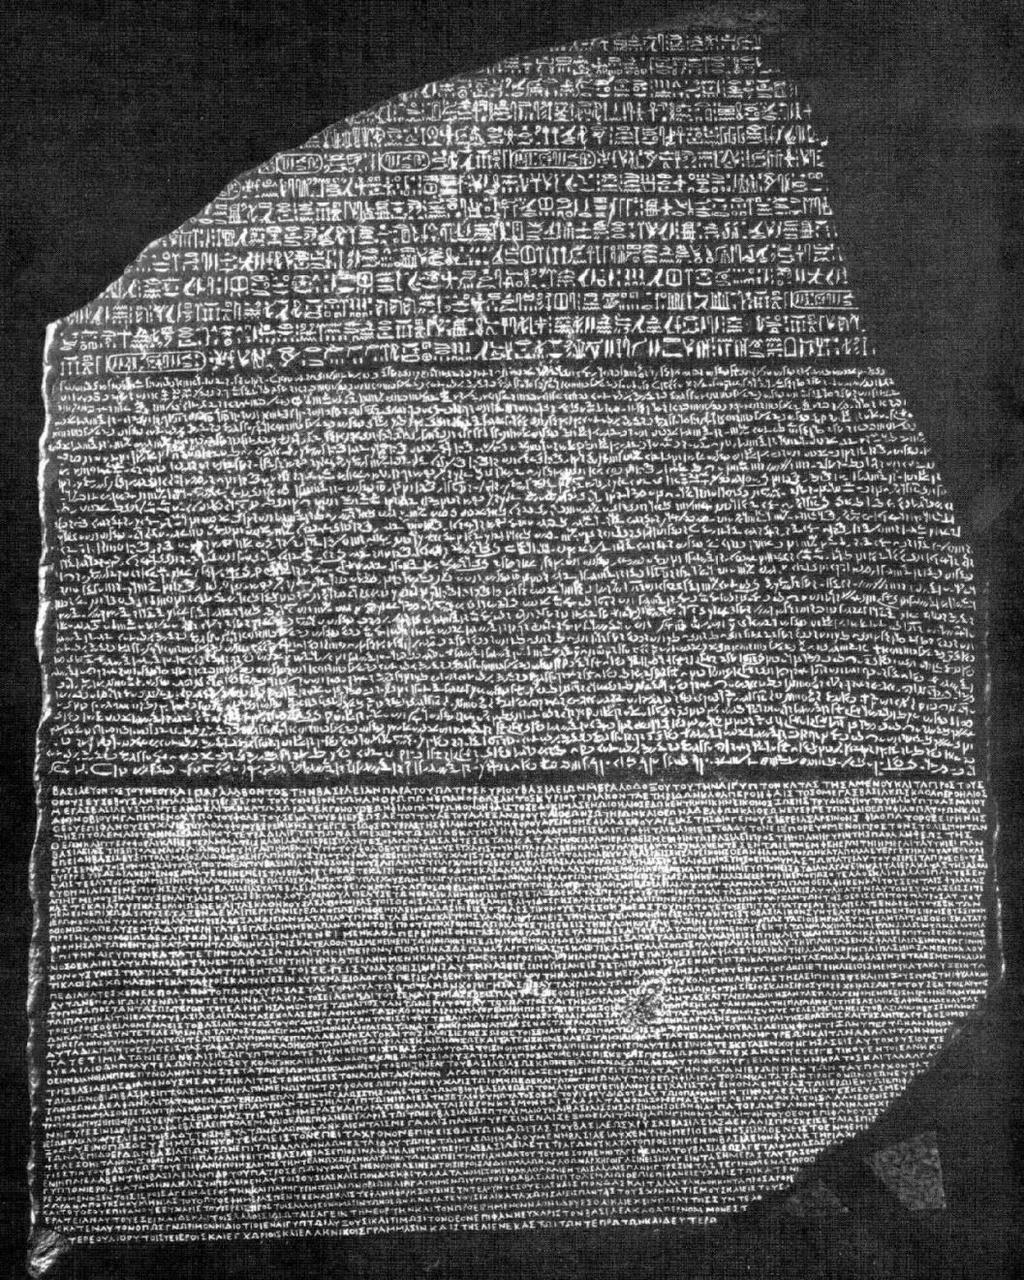 Campagna Egitto 1798-99 Il Direttorio, preoccupato per l eccessiva popolarità di Napoleone, gli affida la campagna in Egitto Stele di Rosetta, permise di comprendere i geroglifici